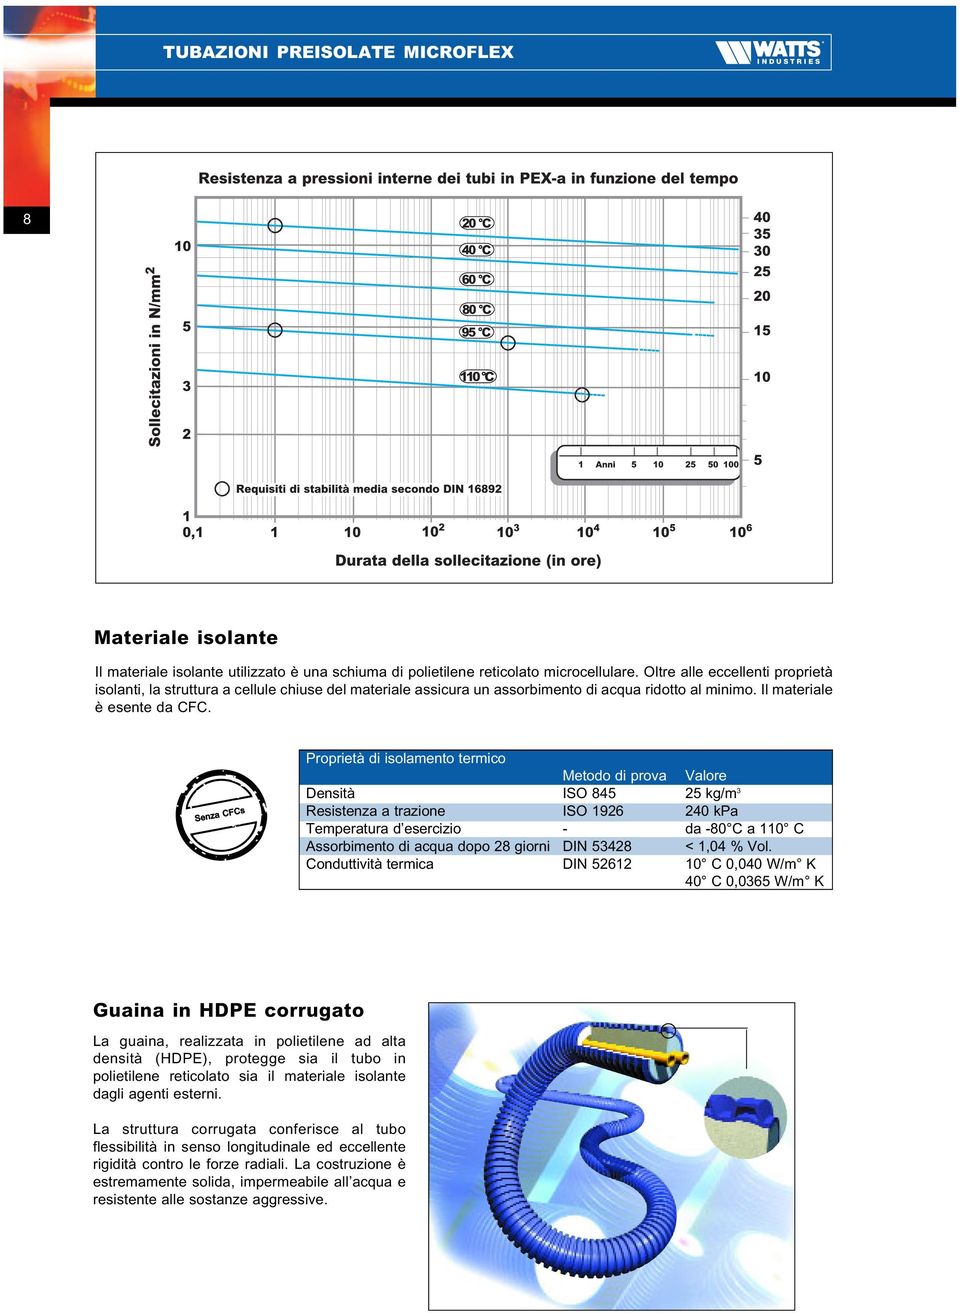 Senza CFCs Proprietà di isolamento termico Metodo di prova Valore Densità ISO 845 25 kg/m 3 Resistenza a trazione ISO 1926 240 kpa Temperatura d esercizio - da -80 C a 110 C Assorbimento di acqua